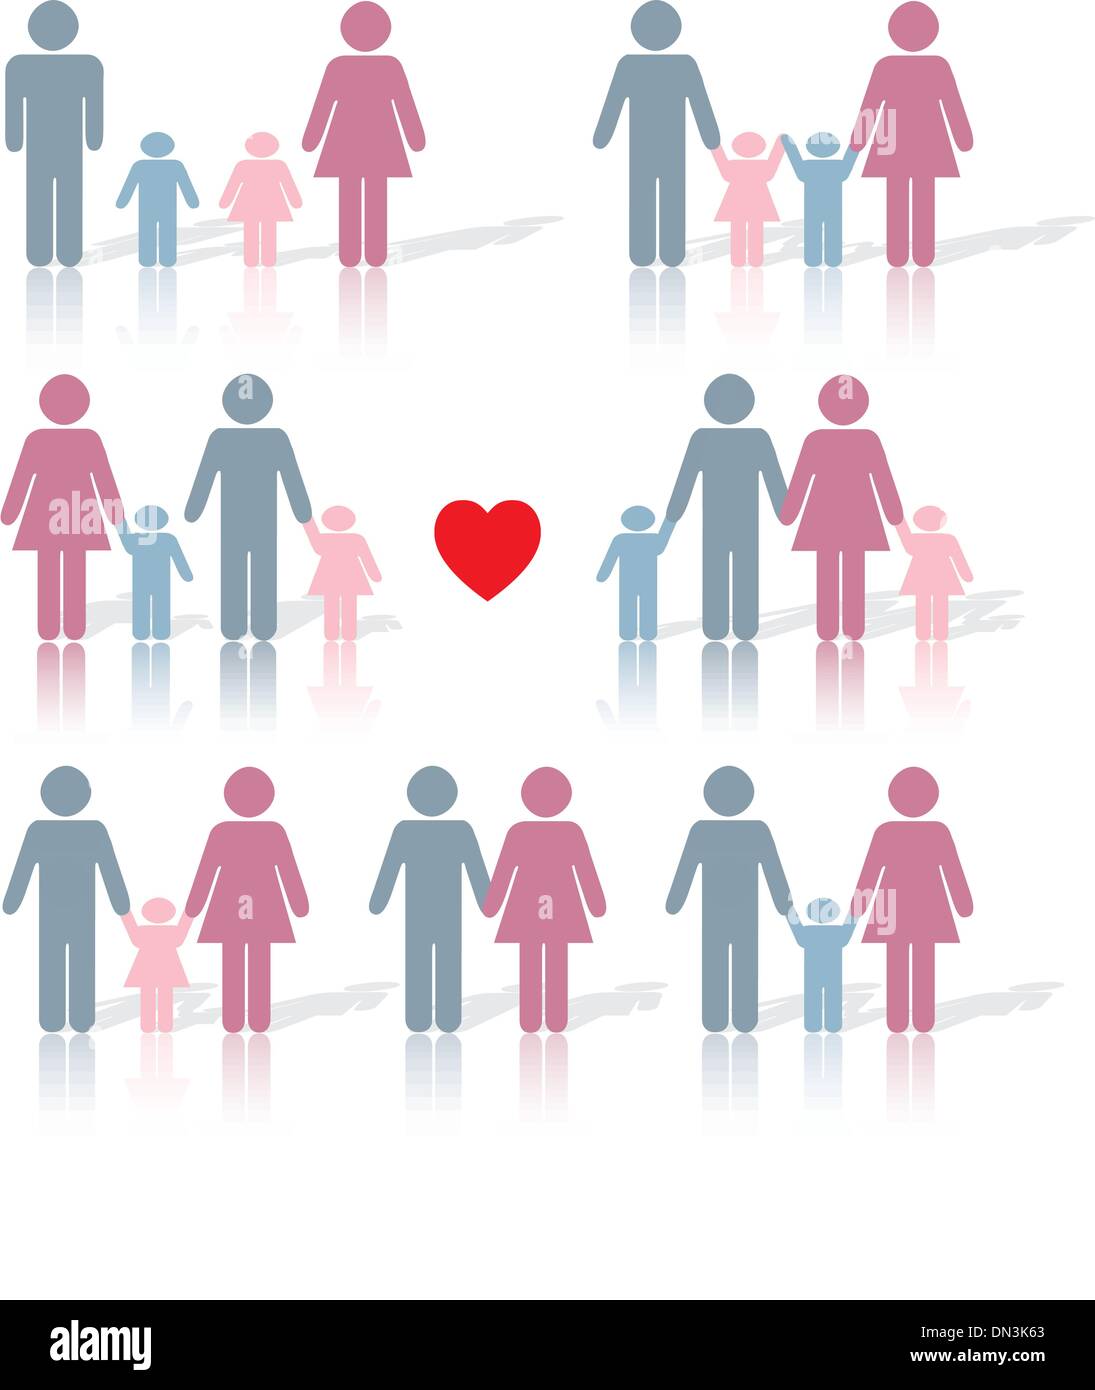 La vita della famiglia di set di icone a colori con un cuore rosso Illustrazione Vettoriale